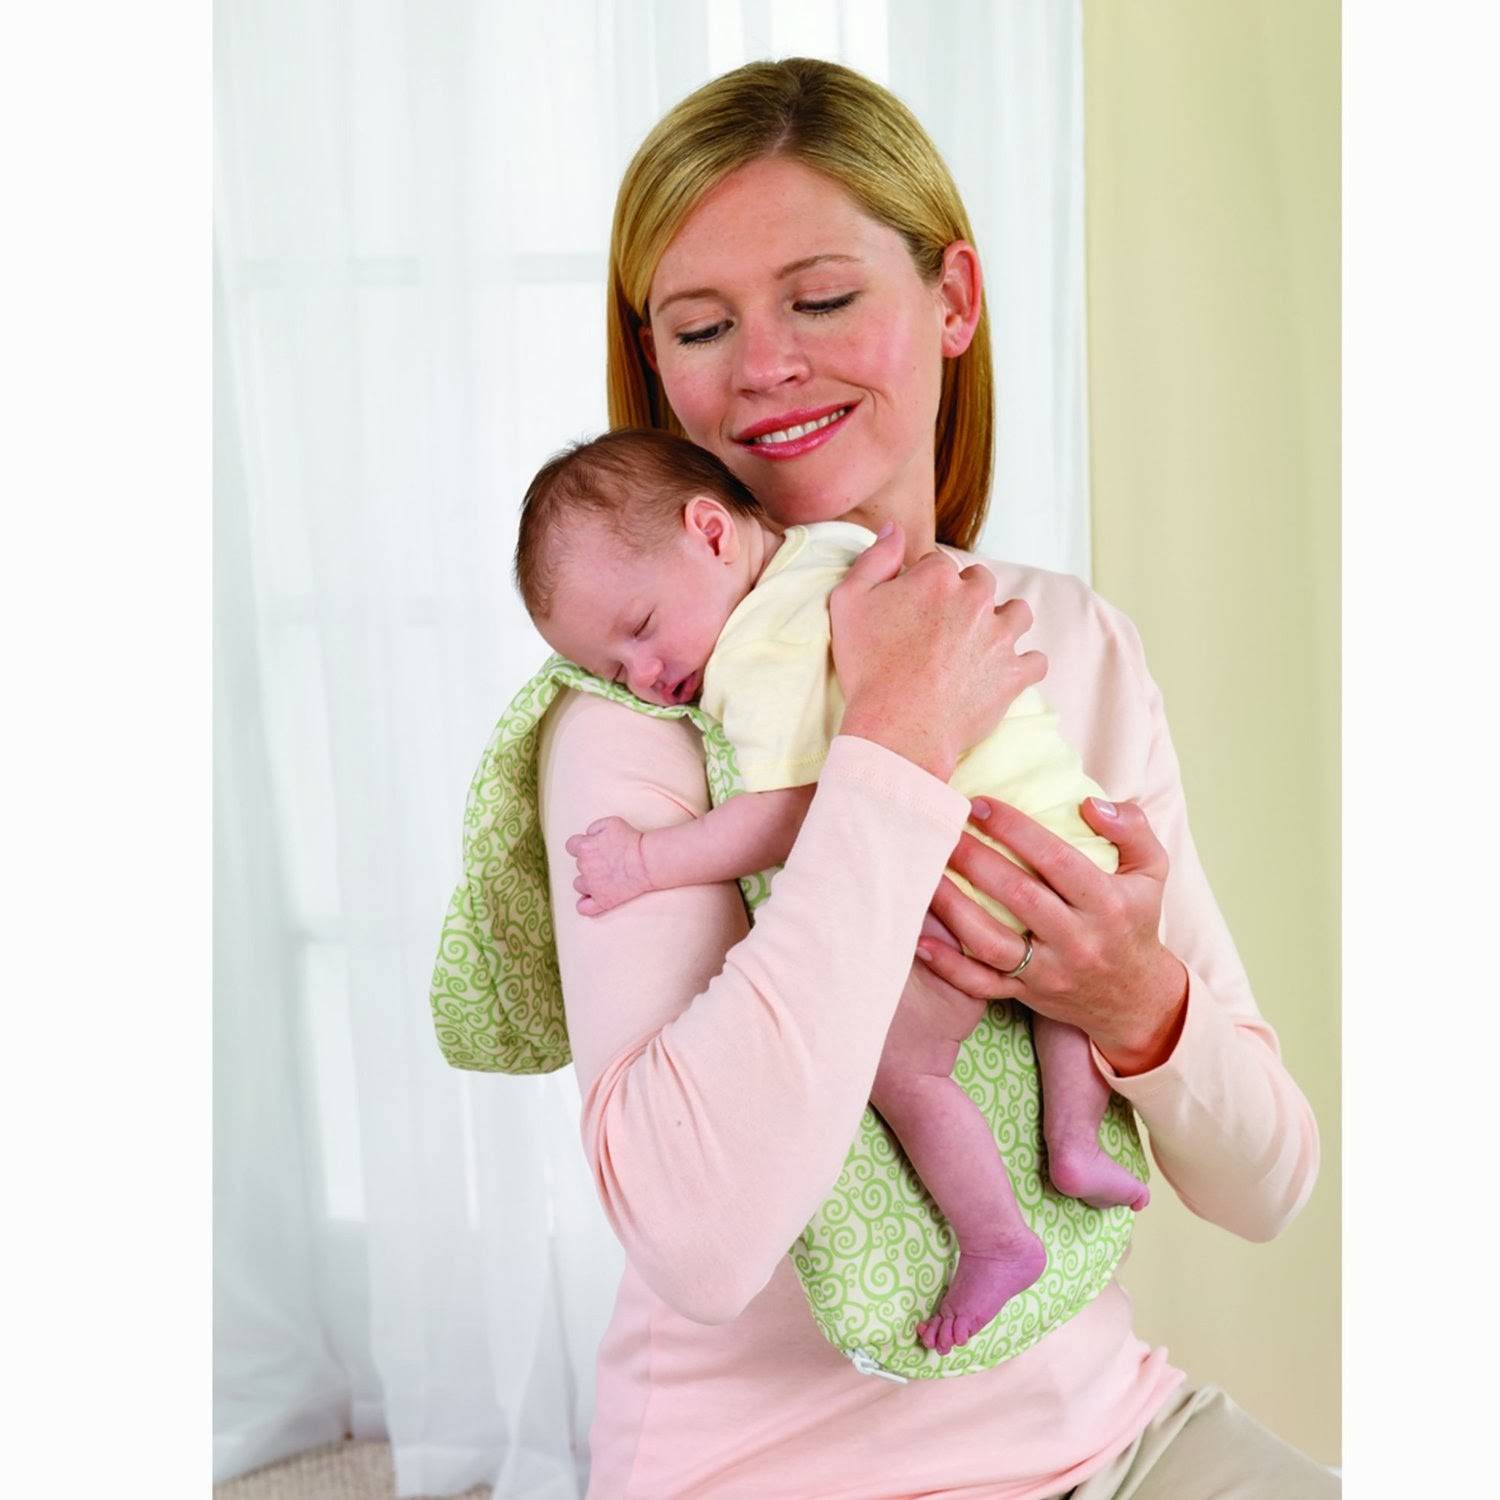 Как правильно носить новорожденного столбиком после кормления комаровский